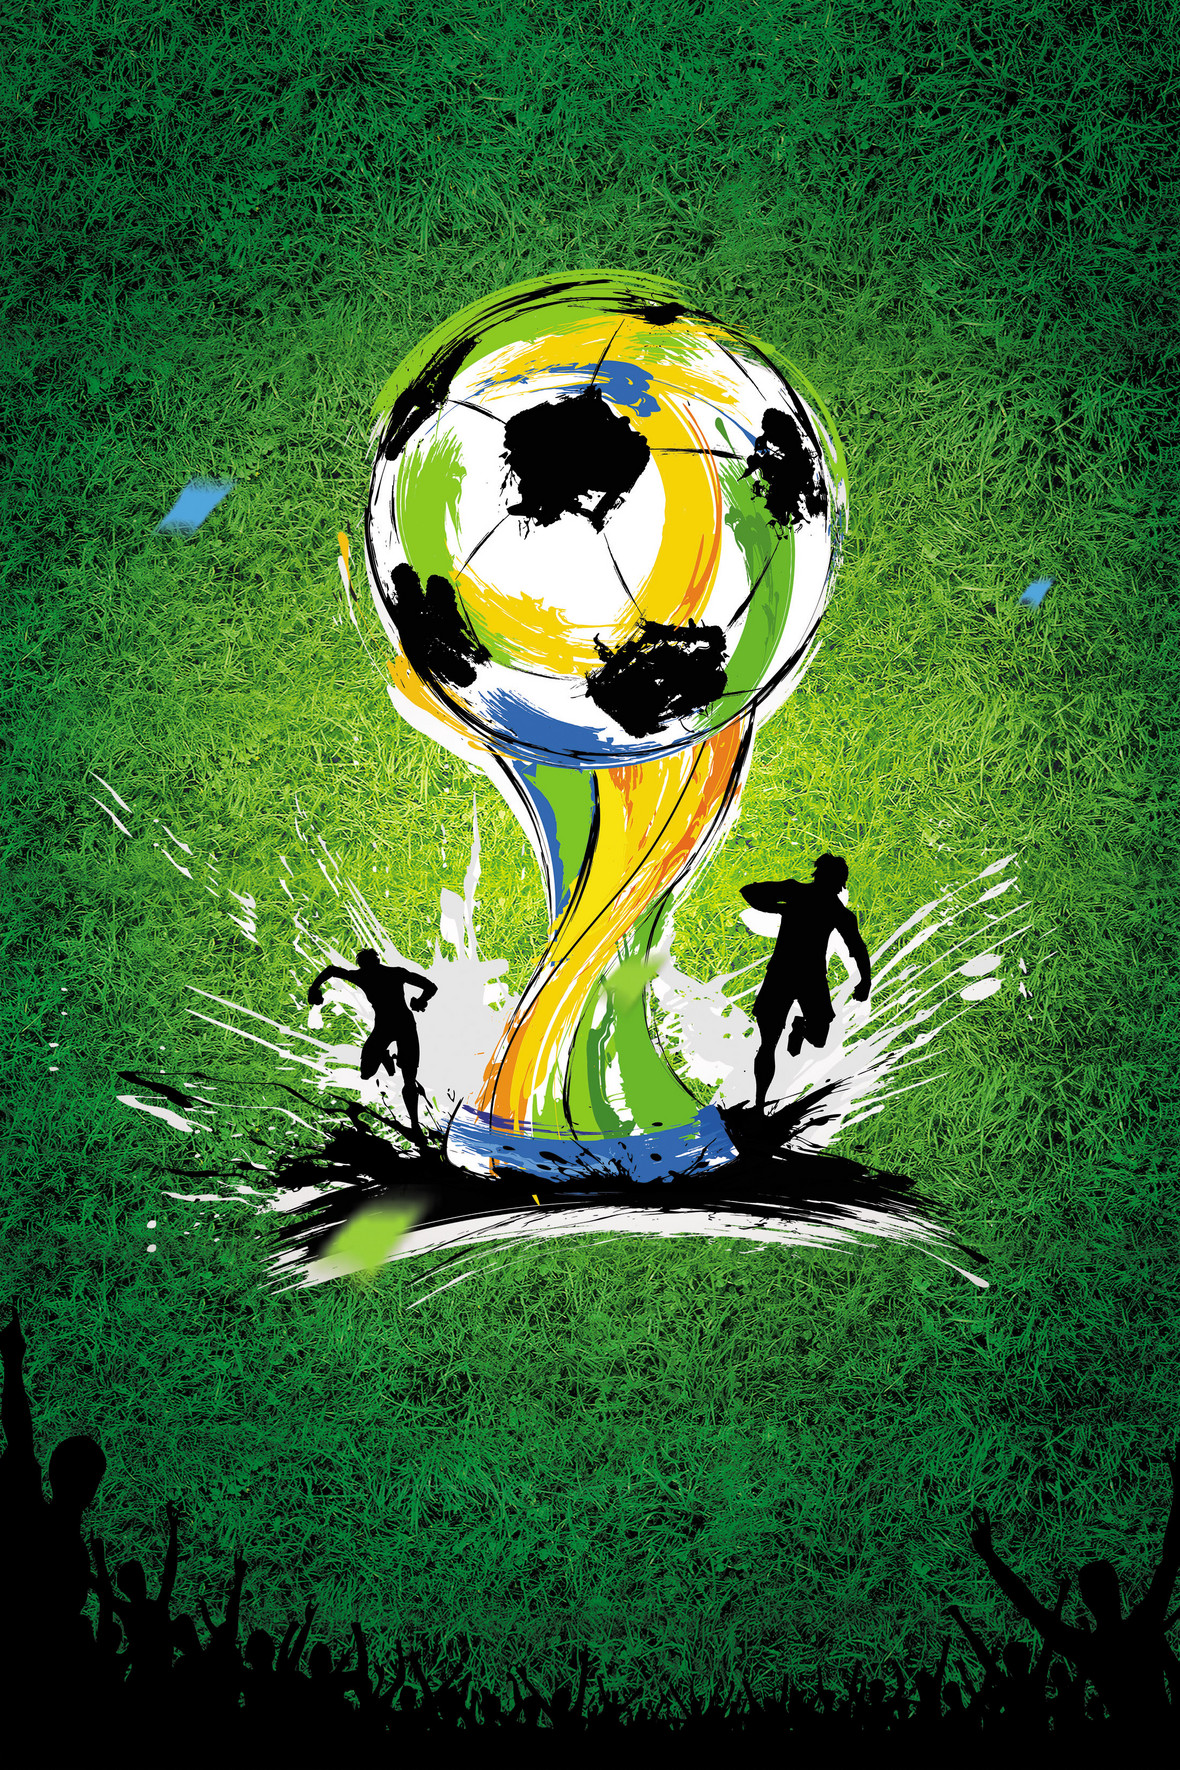 绿色草地上踢足球元素背景图